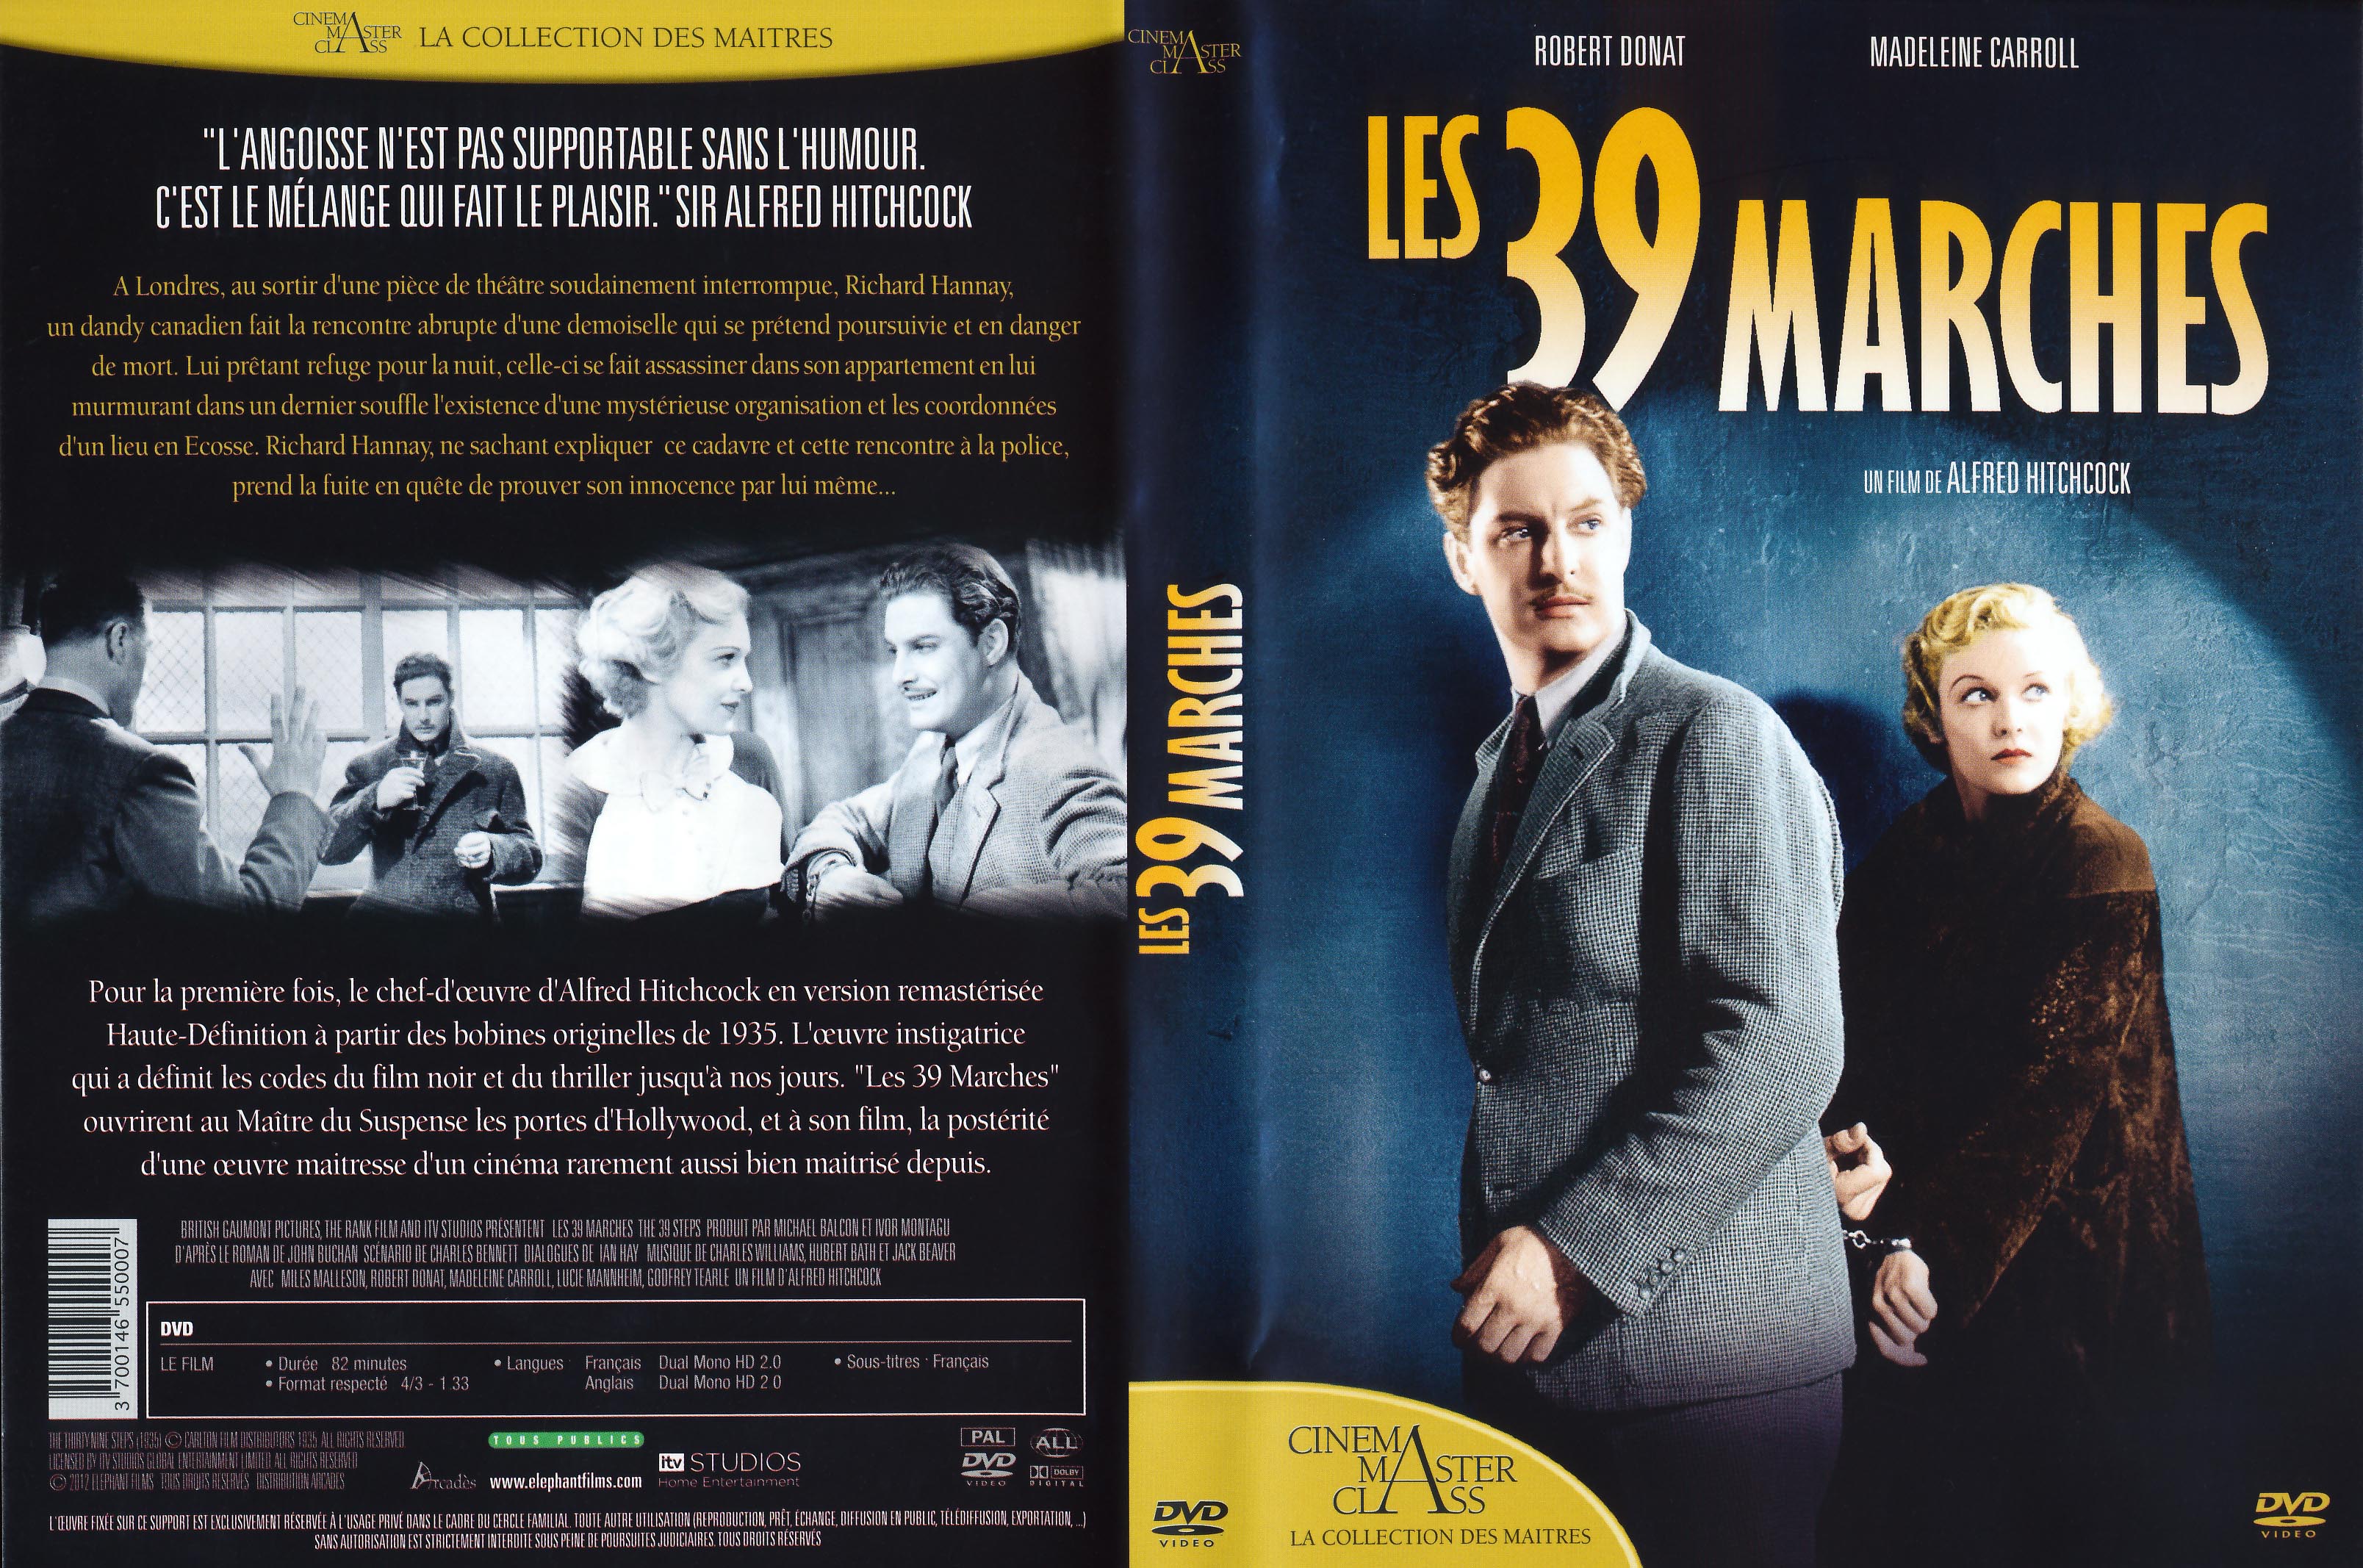 Jaquette DVD Les 39 marches v3